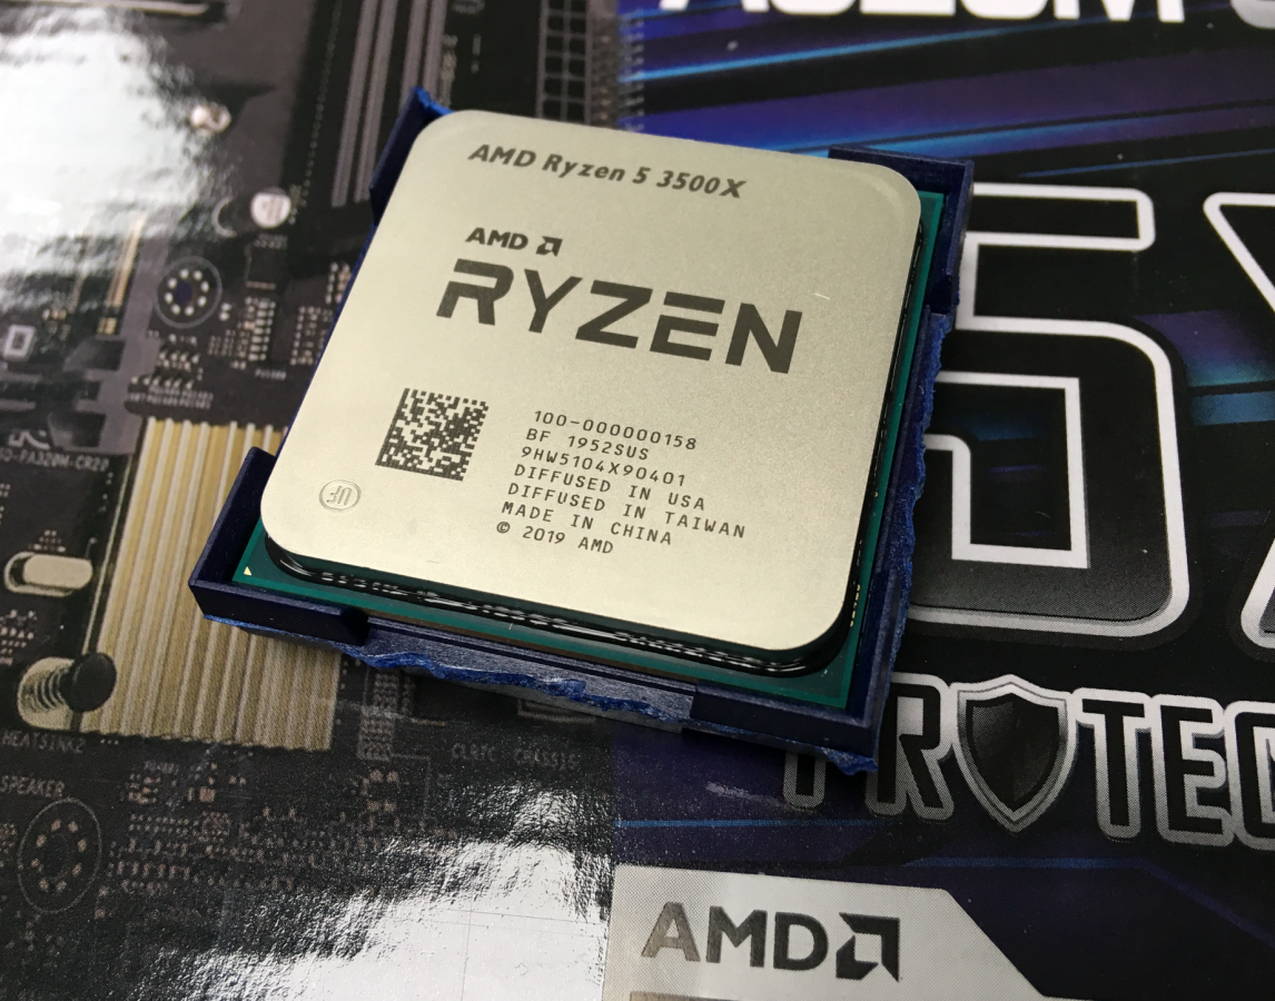 Amd ryzen 5600 6 core processor. AMD Ryzen 5 3500x. AMD Ryzen 5 3500x 6-Core Processor. АМД райзен 5 3500. AMD Ryzen 5 3500x am4, 6 x 3600 МГЦ.